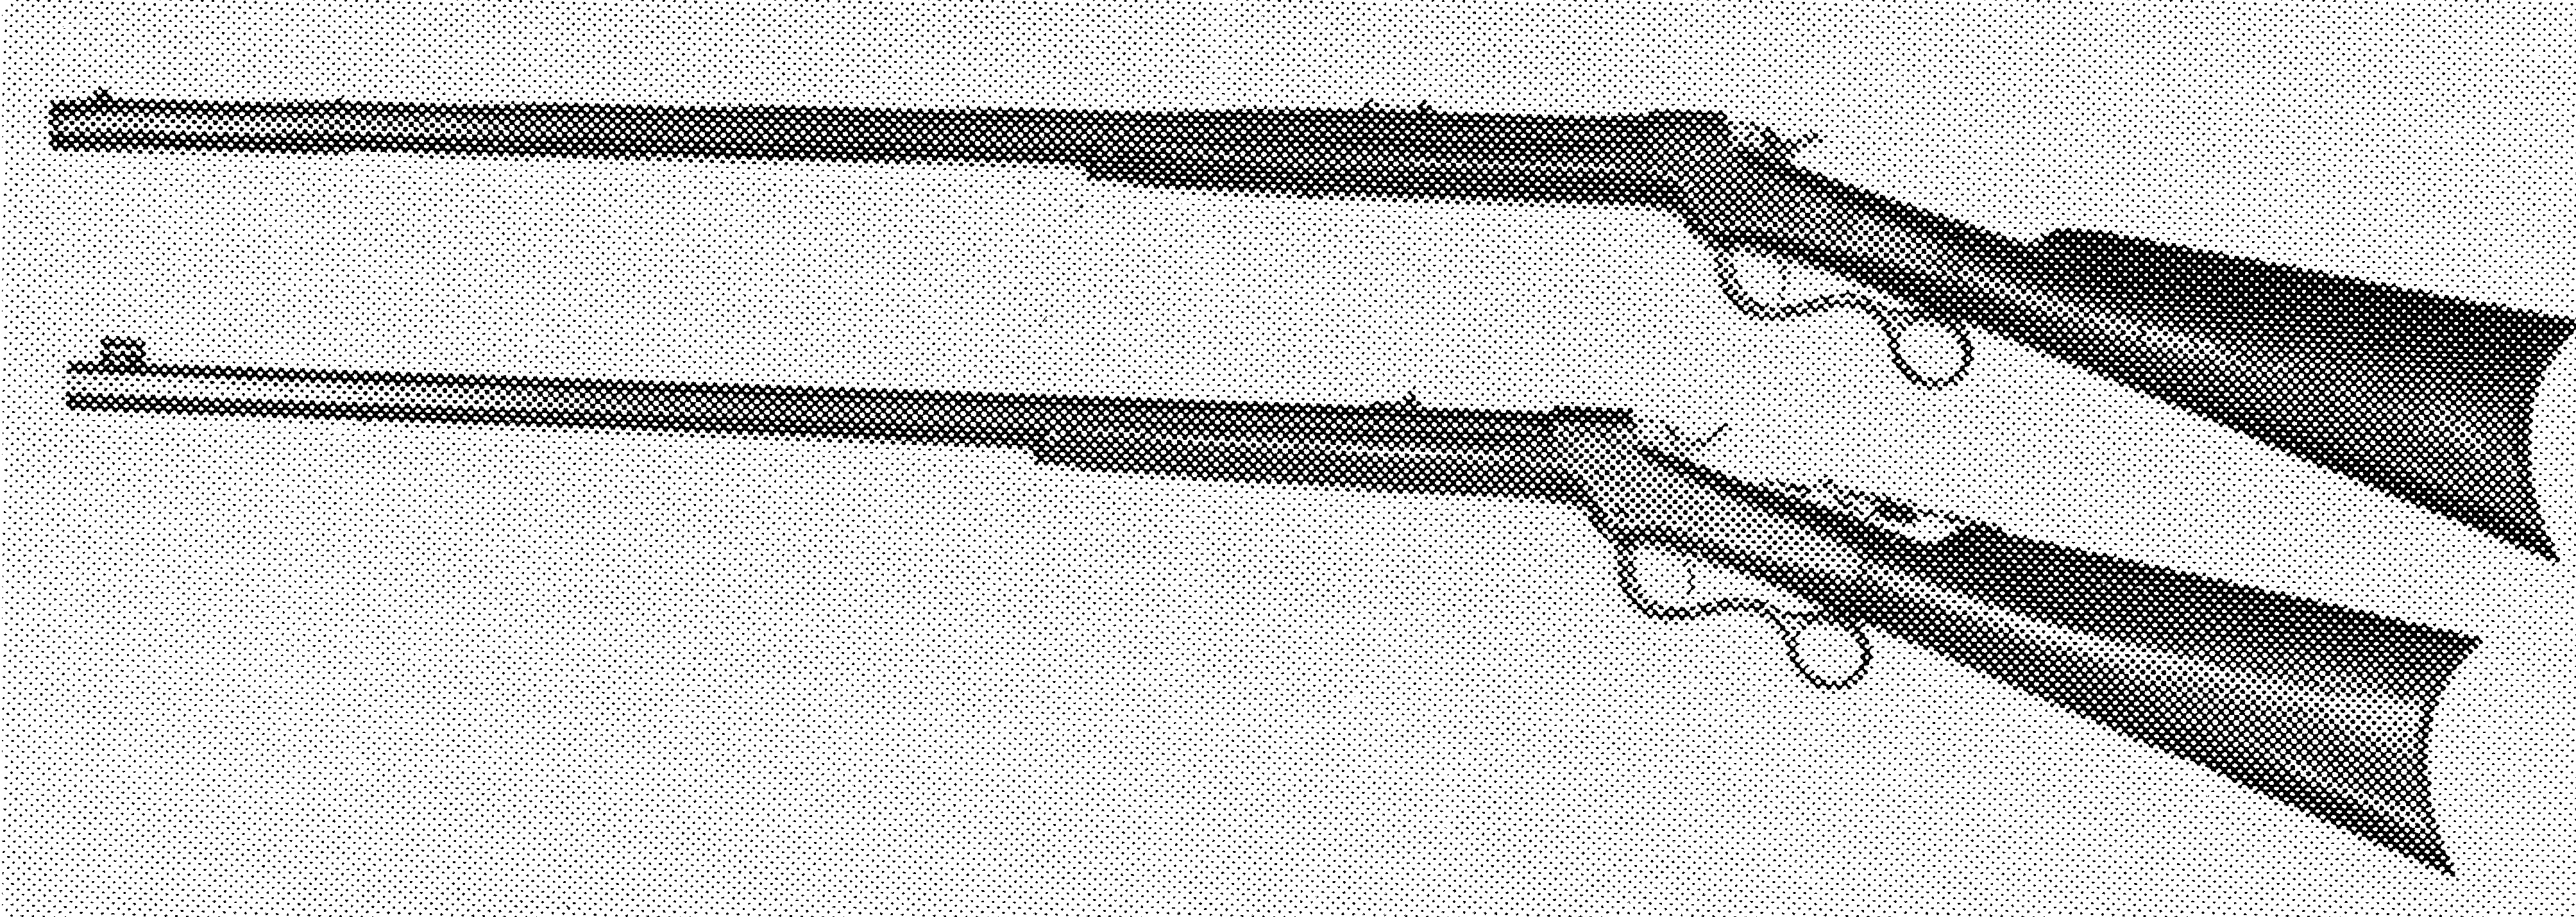 Ballard No. 2 Sporting Rifle